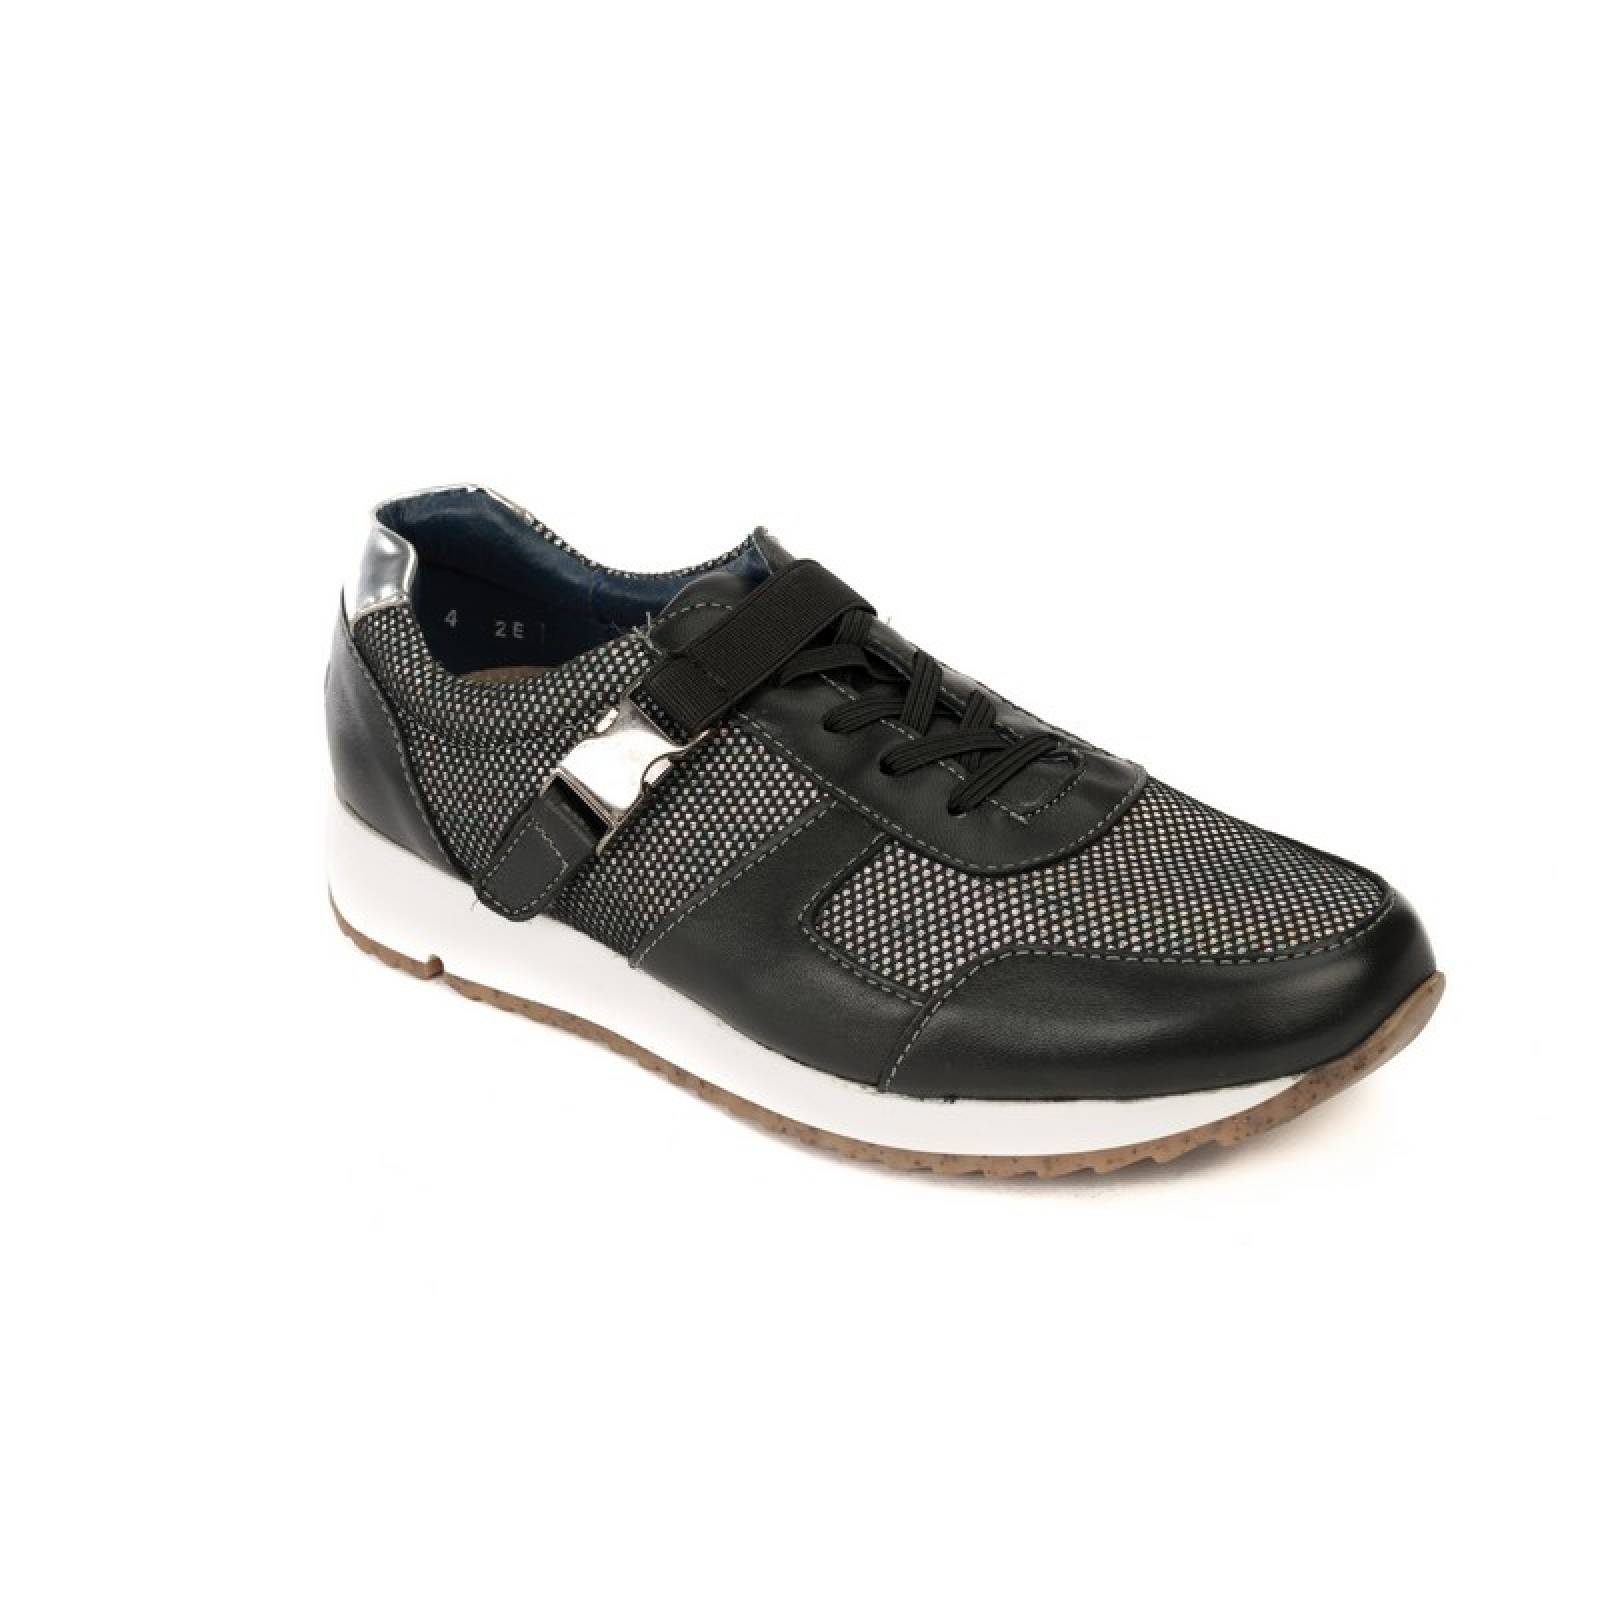 Jarking - Zapato Casual Sport Negro de Piel con Agujetas y Velcro para Dama